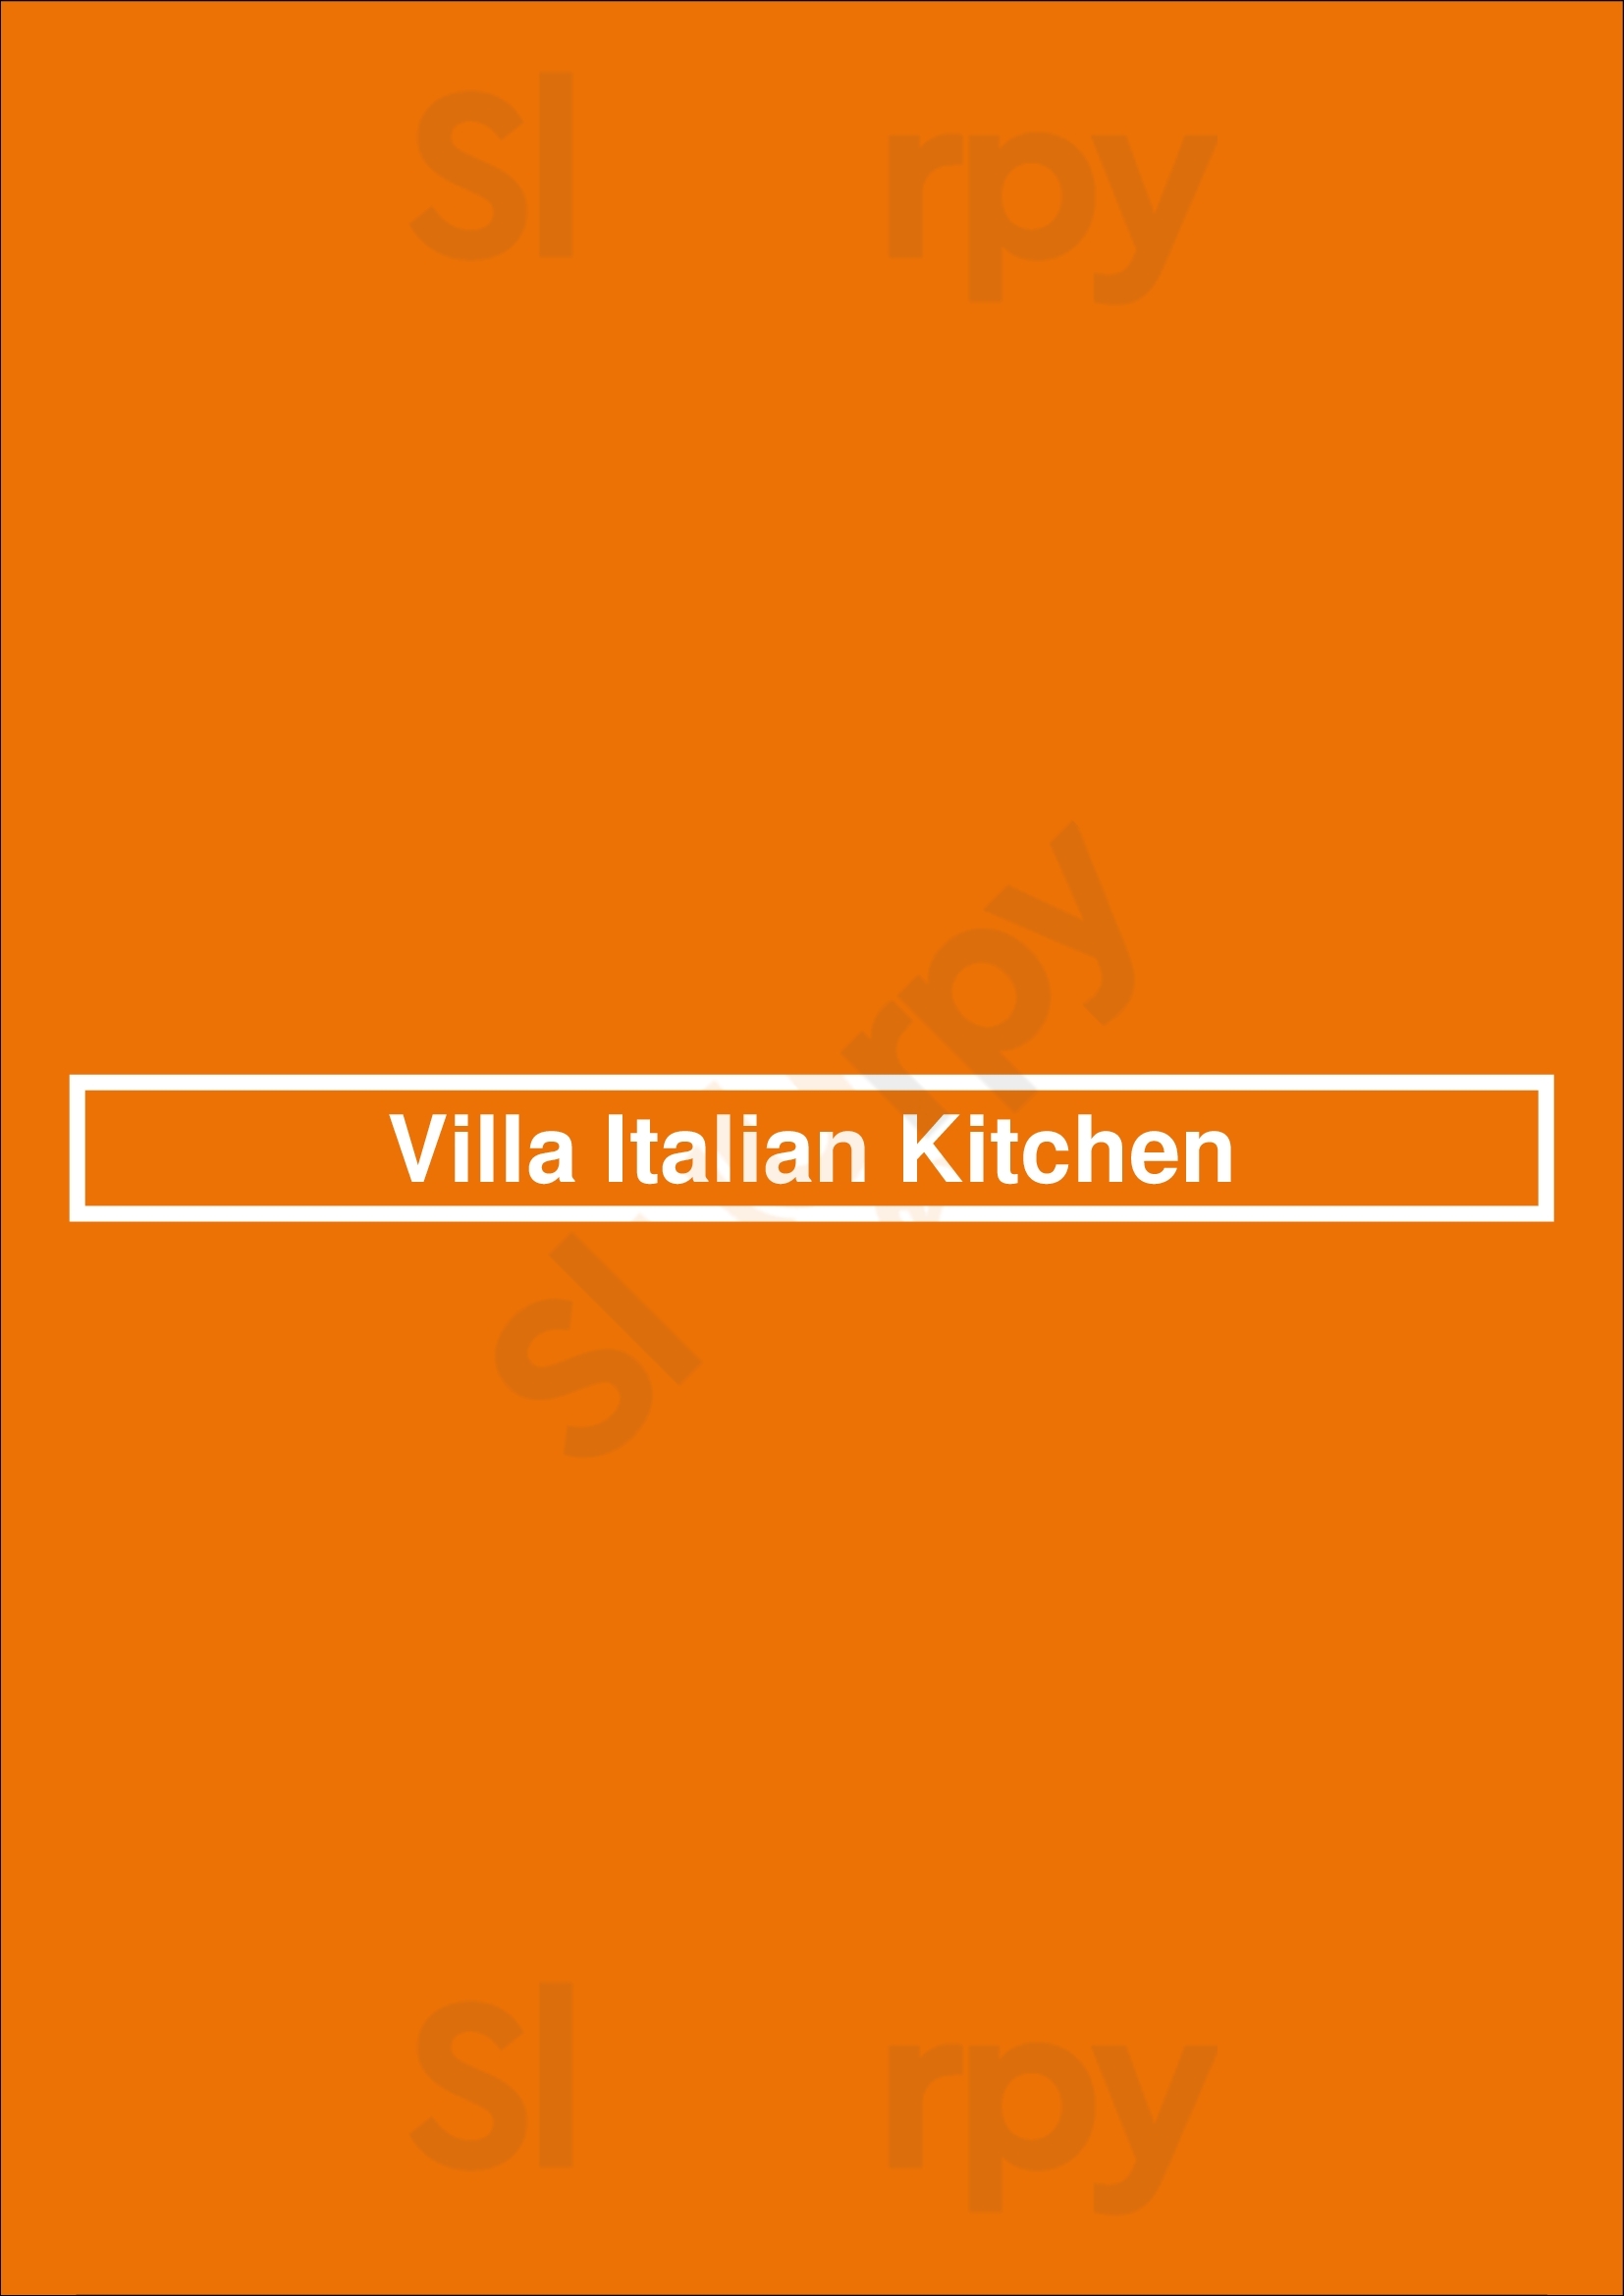 Villa Italian Kitchen Virginia Beach Menu - 1